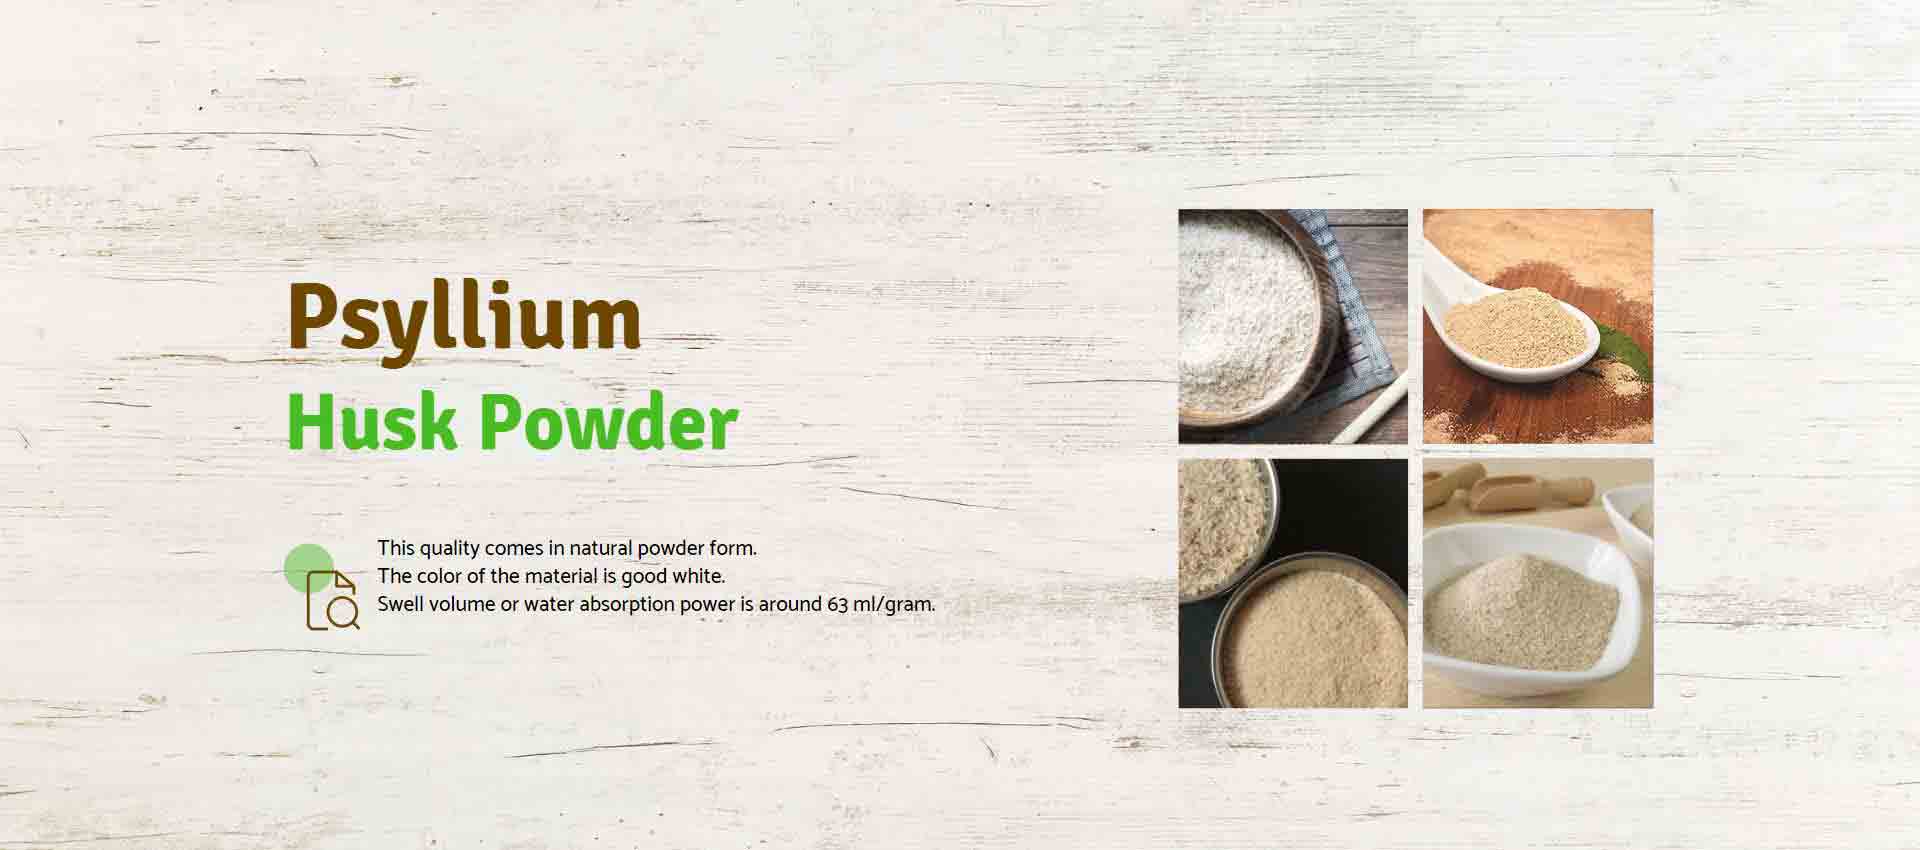 Psyllium Husk Powder Manufacturers in Toronto